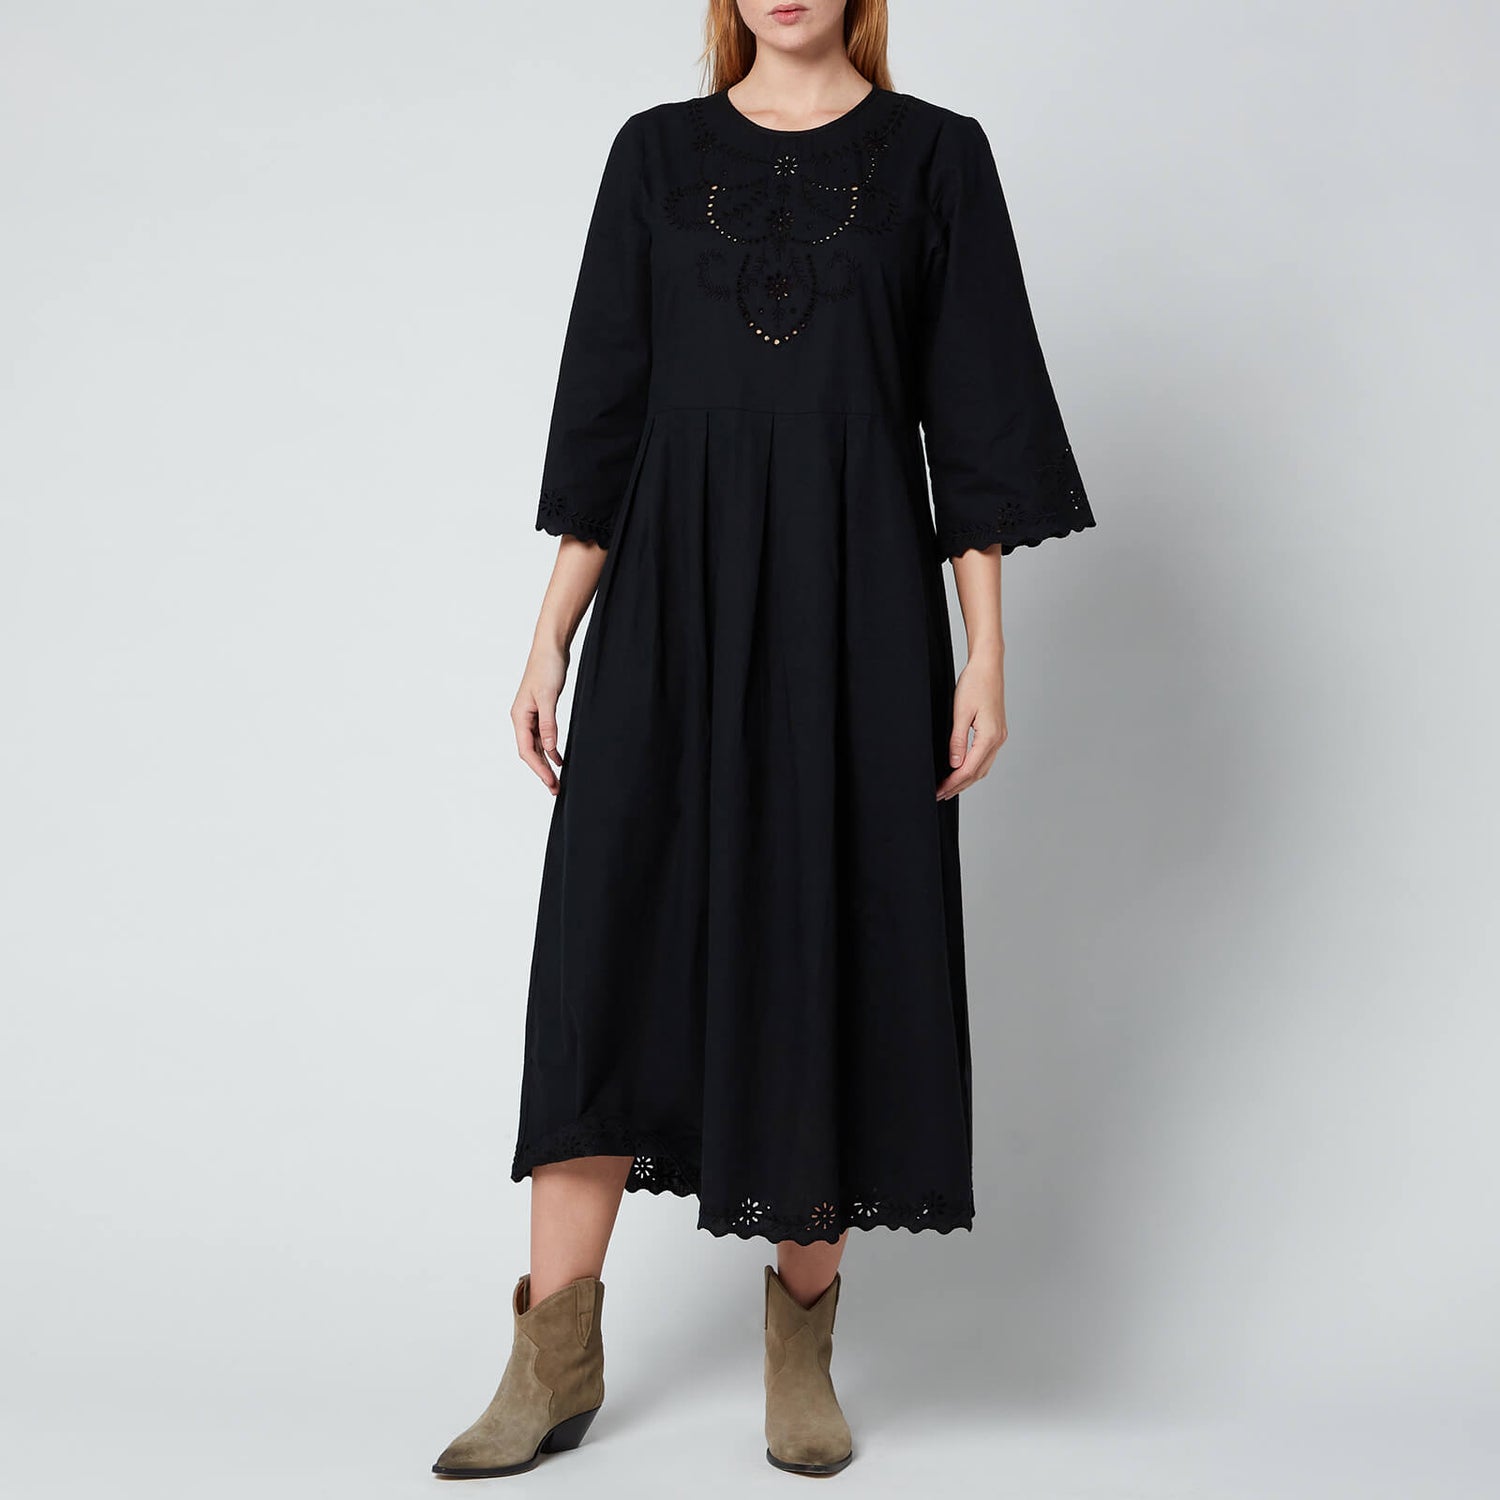 Skall Studio Women's Franka Dress - Black - EU 34/UK 6